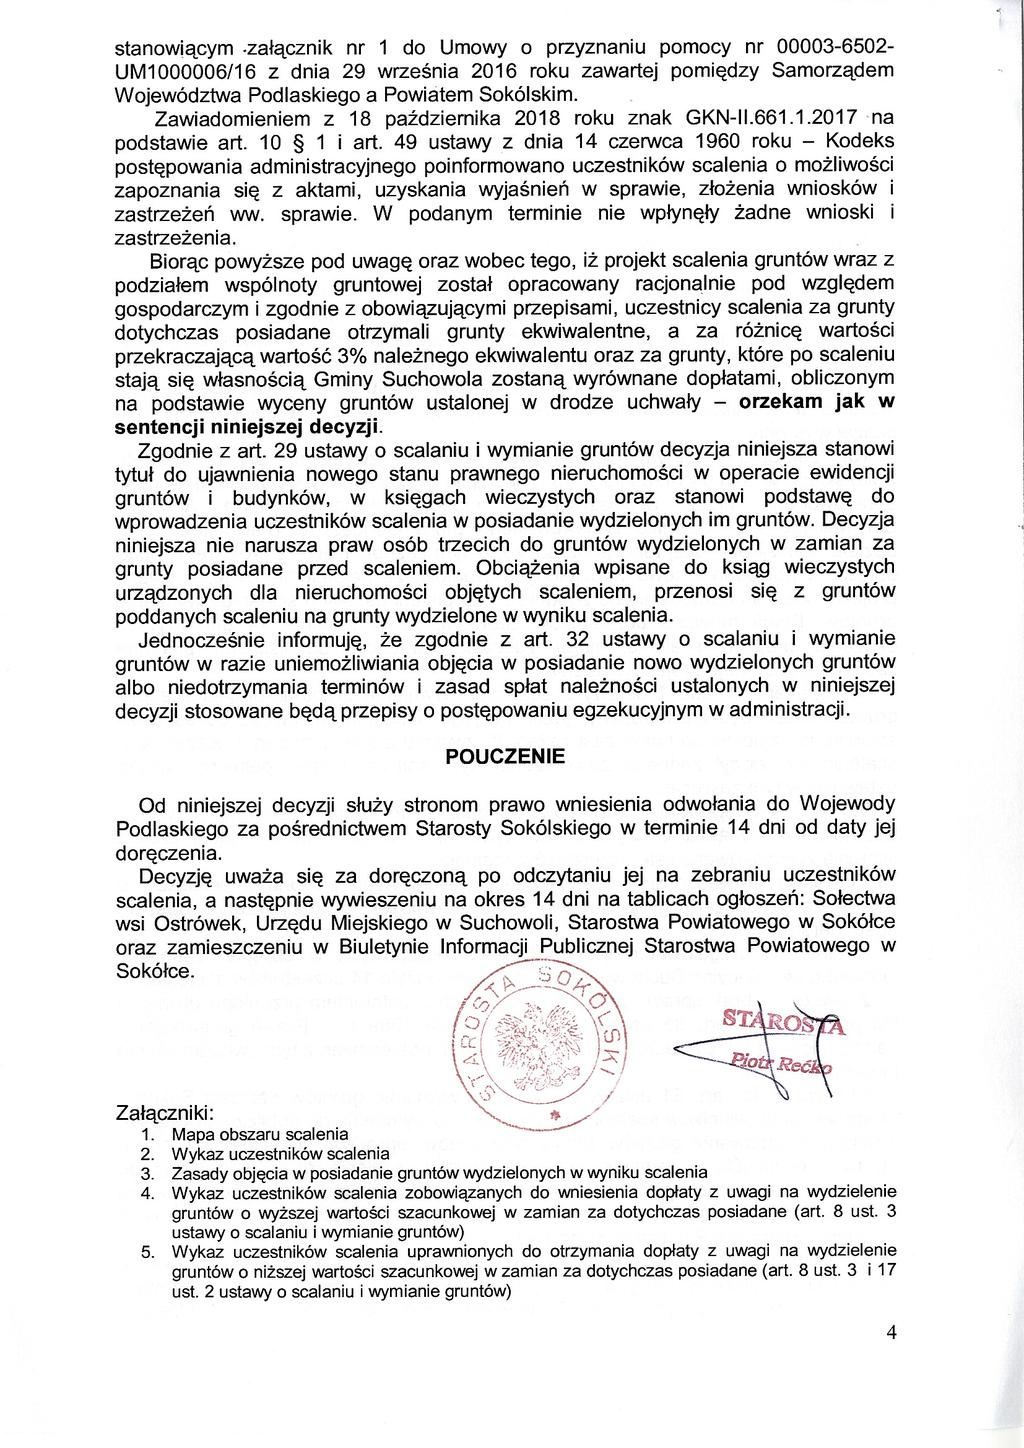 stanowiącym.załącznik nr 1 do Umowy o przyznaniu pomocy nr 00003-6502- UM1000006/16 z dnia 29 września 2016 roku zawartej pomiędzy Samorządem Województwa Podlaskiego a Powiatem Sokólskim.